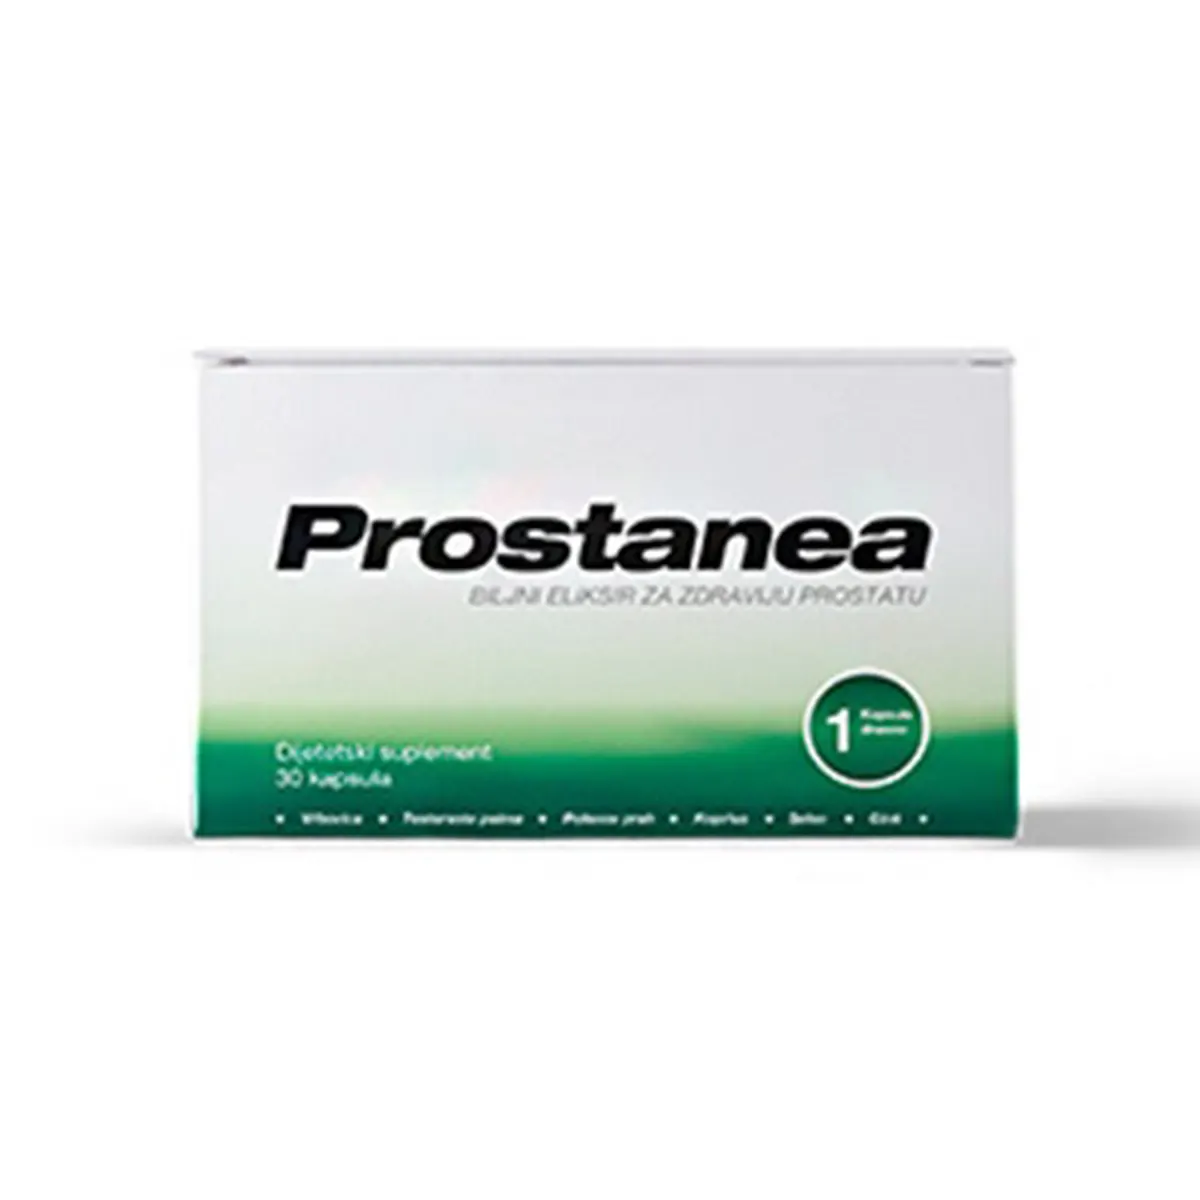 Prostanea biljni eliksir za prostatu